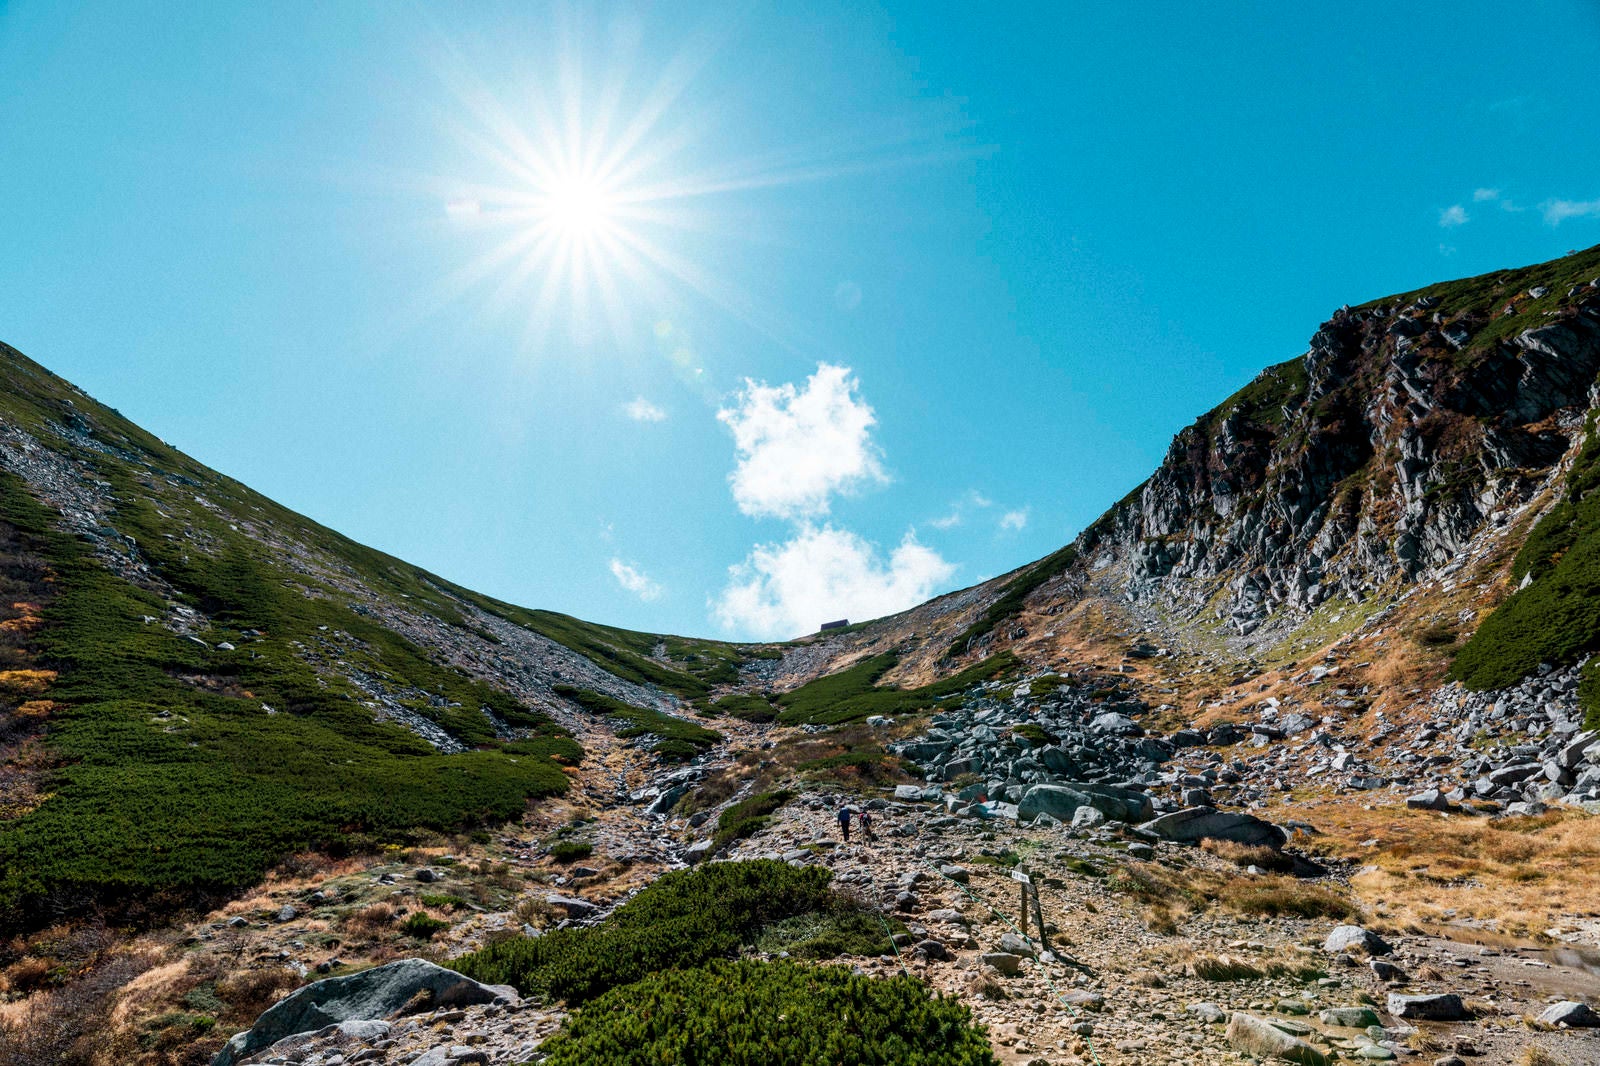 「木曽駒ヶ岳の紅葉のカールと青空」の写真